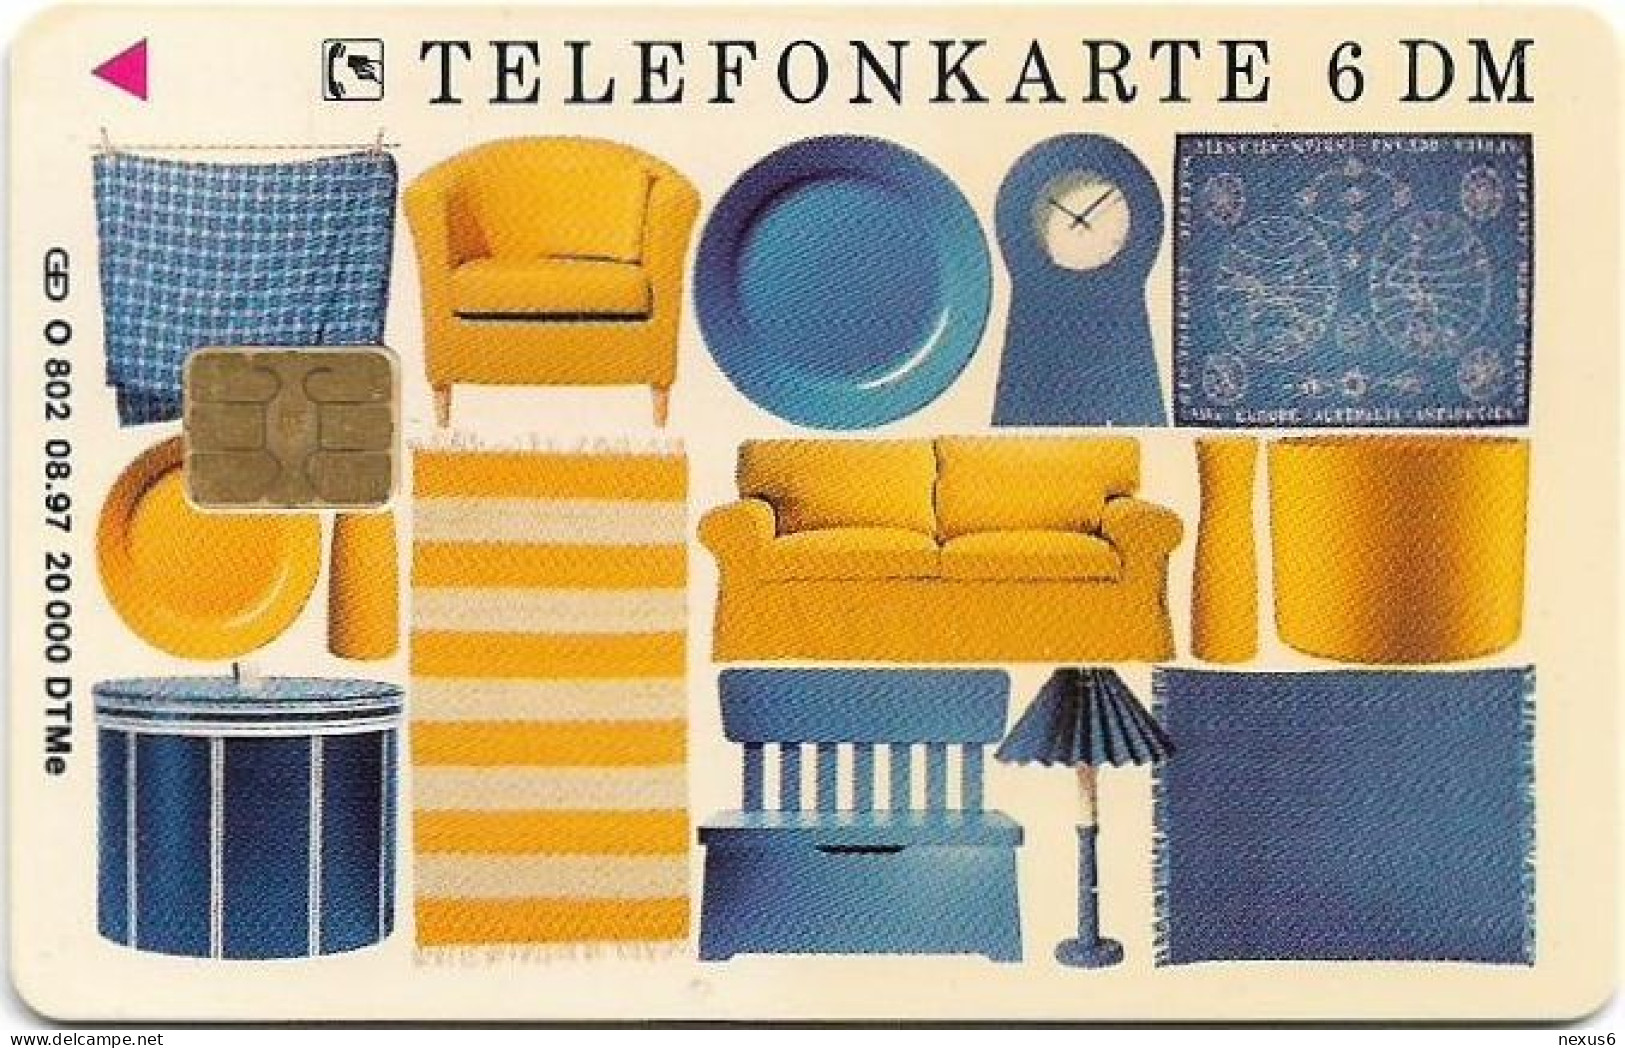 Germany - IKEA - Entdecke Die Möglichkeiten - O 0802 - 08.1997, 6DM, 20.000ex, Used - O-Series: Kundenserie Vom Sammlerservice Ausgeschlossen